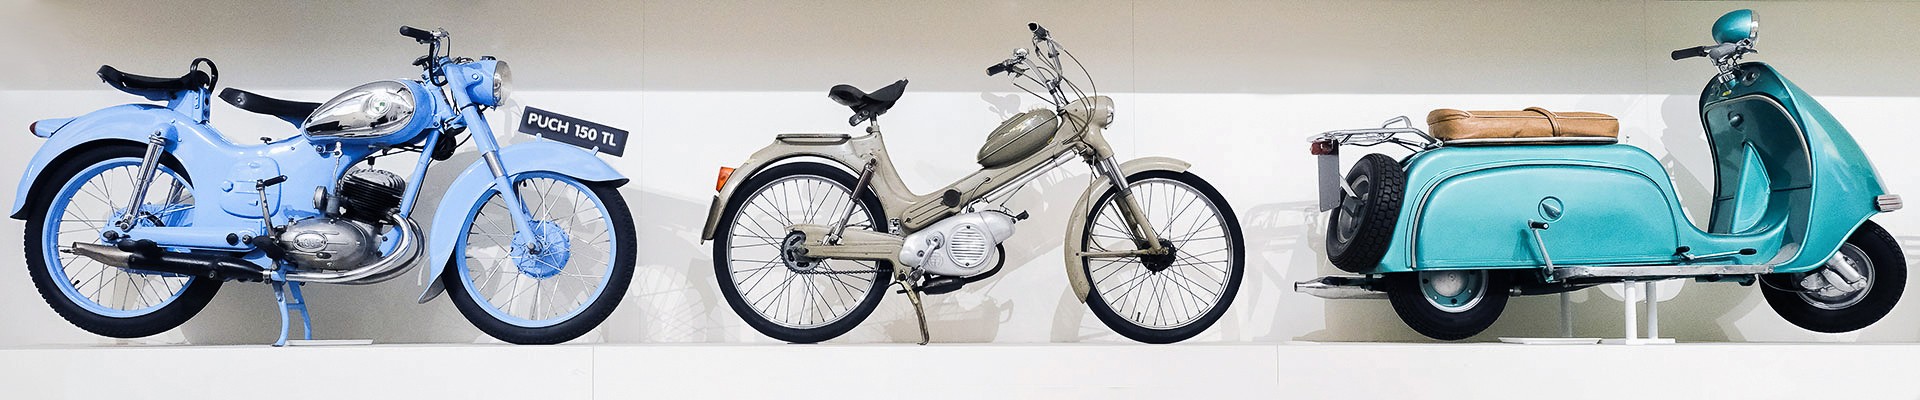 Ansicht aus der Ausstellung "Mobilität" mit 3 Motorrädern: 